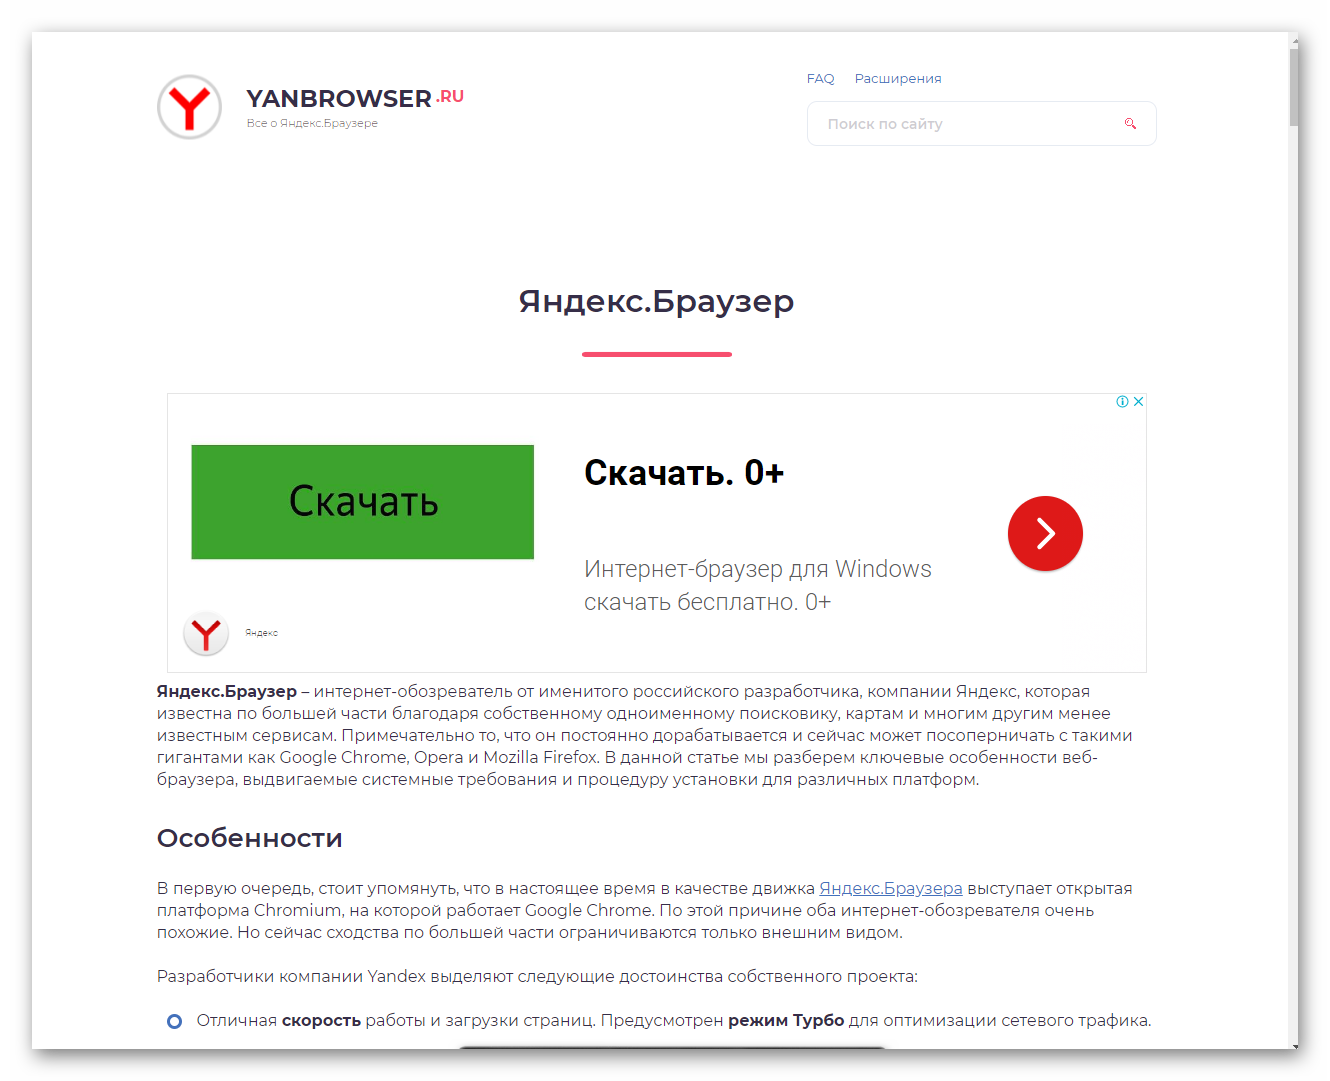 Как выглядит полноэкранный режим в Яндекс.Браузере